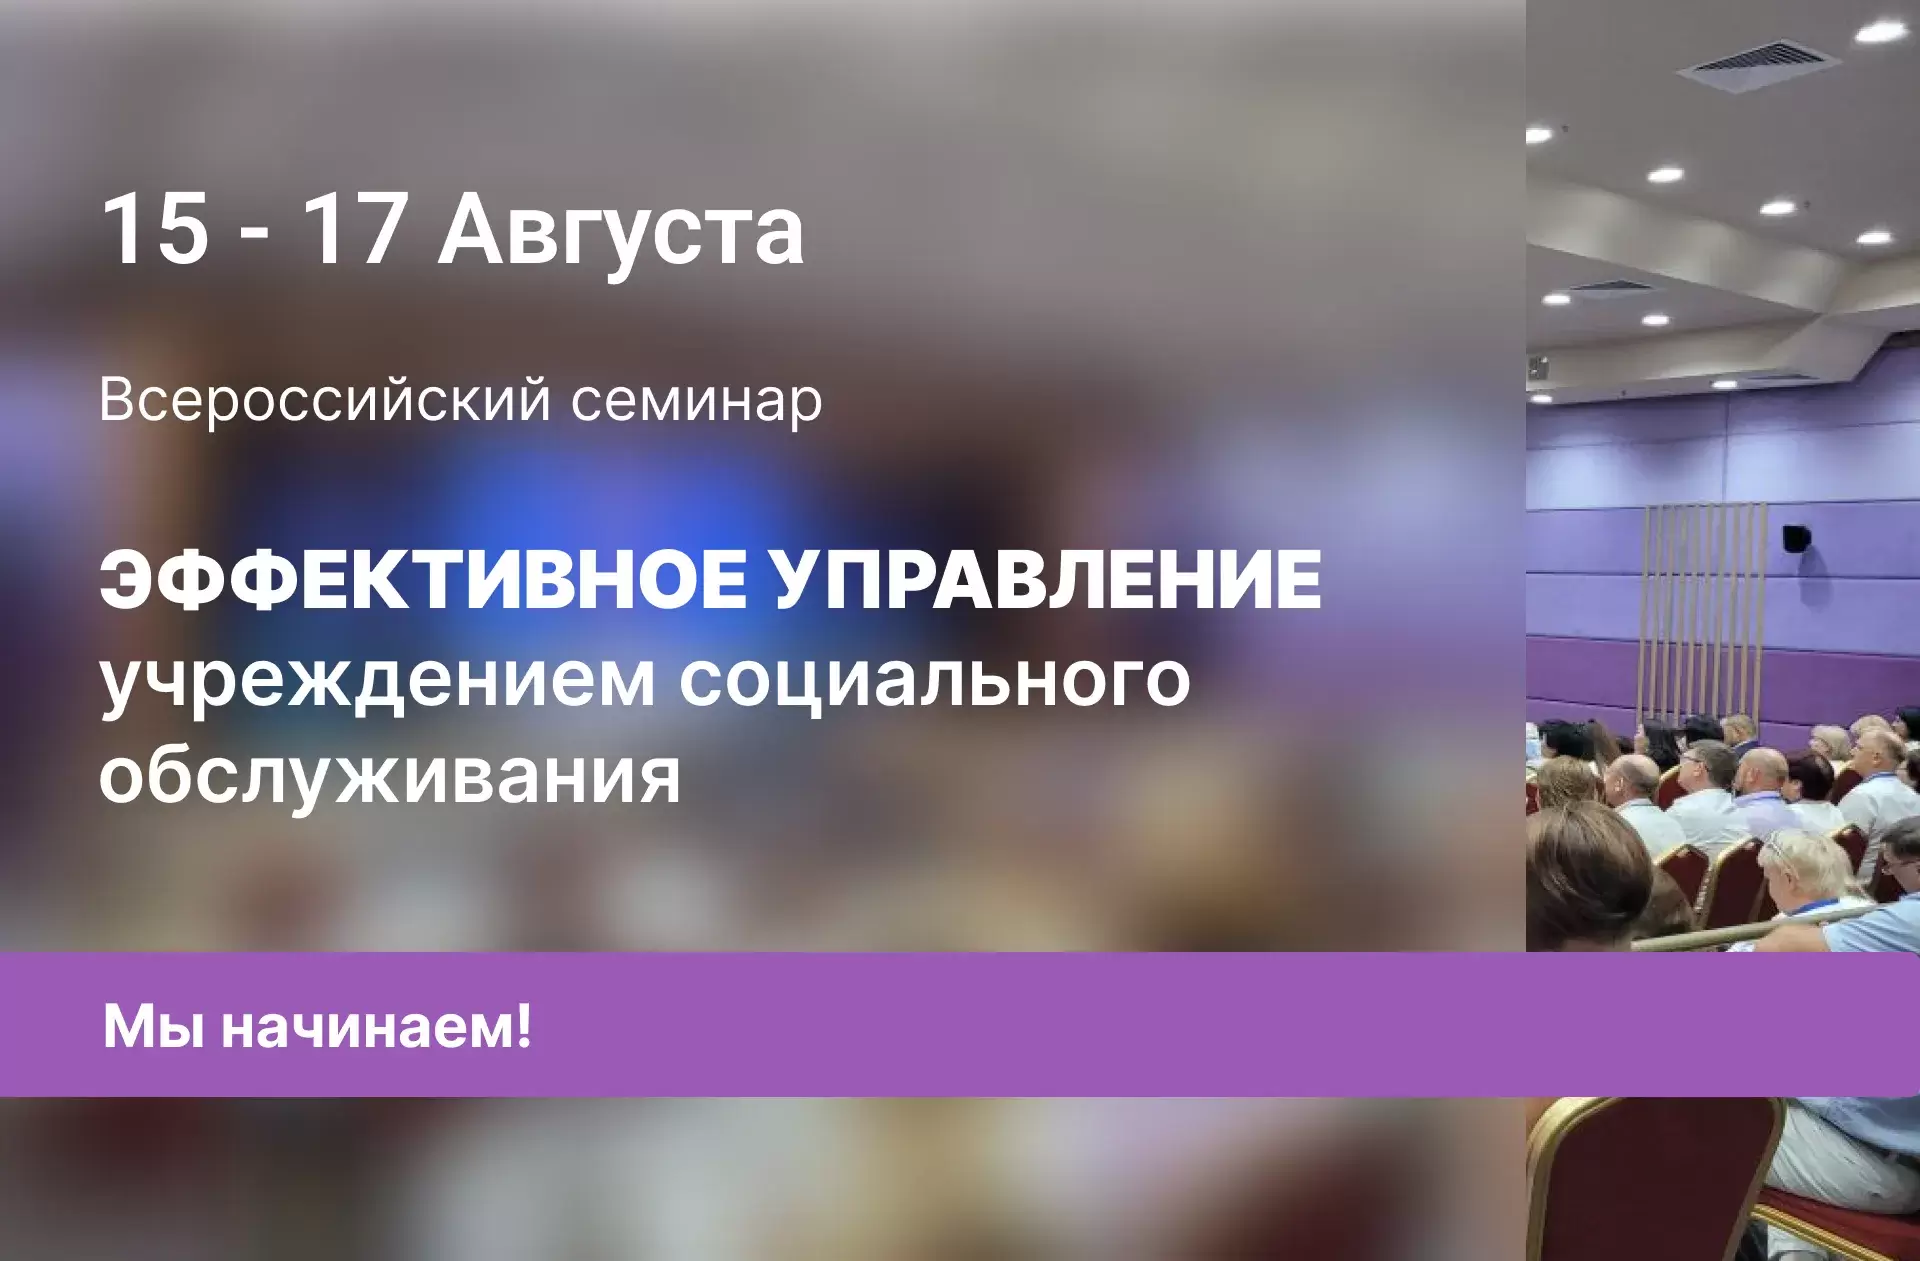 Начался Всероссийский семинар «Эффективное управление учреждением социального обслуживания»